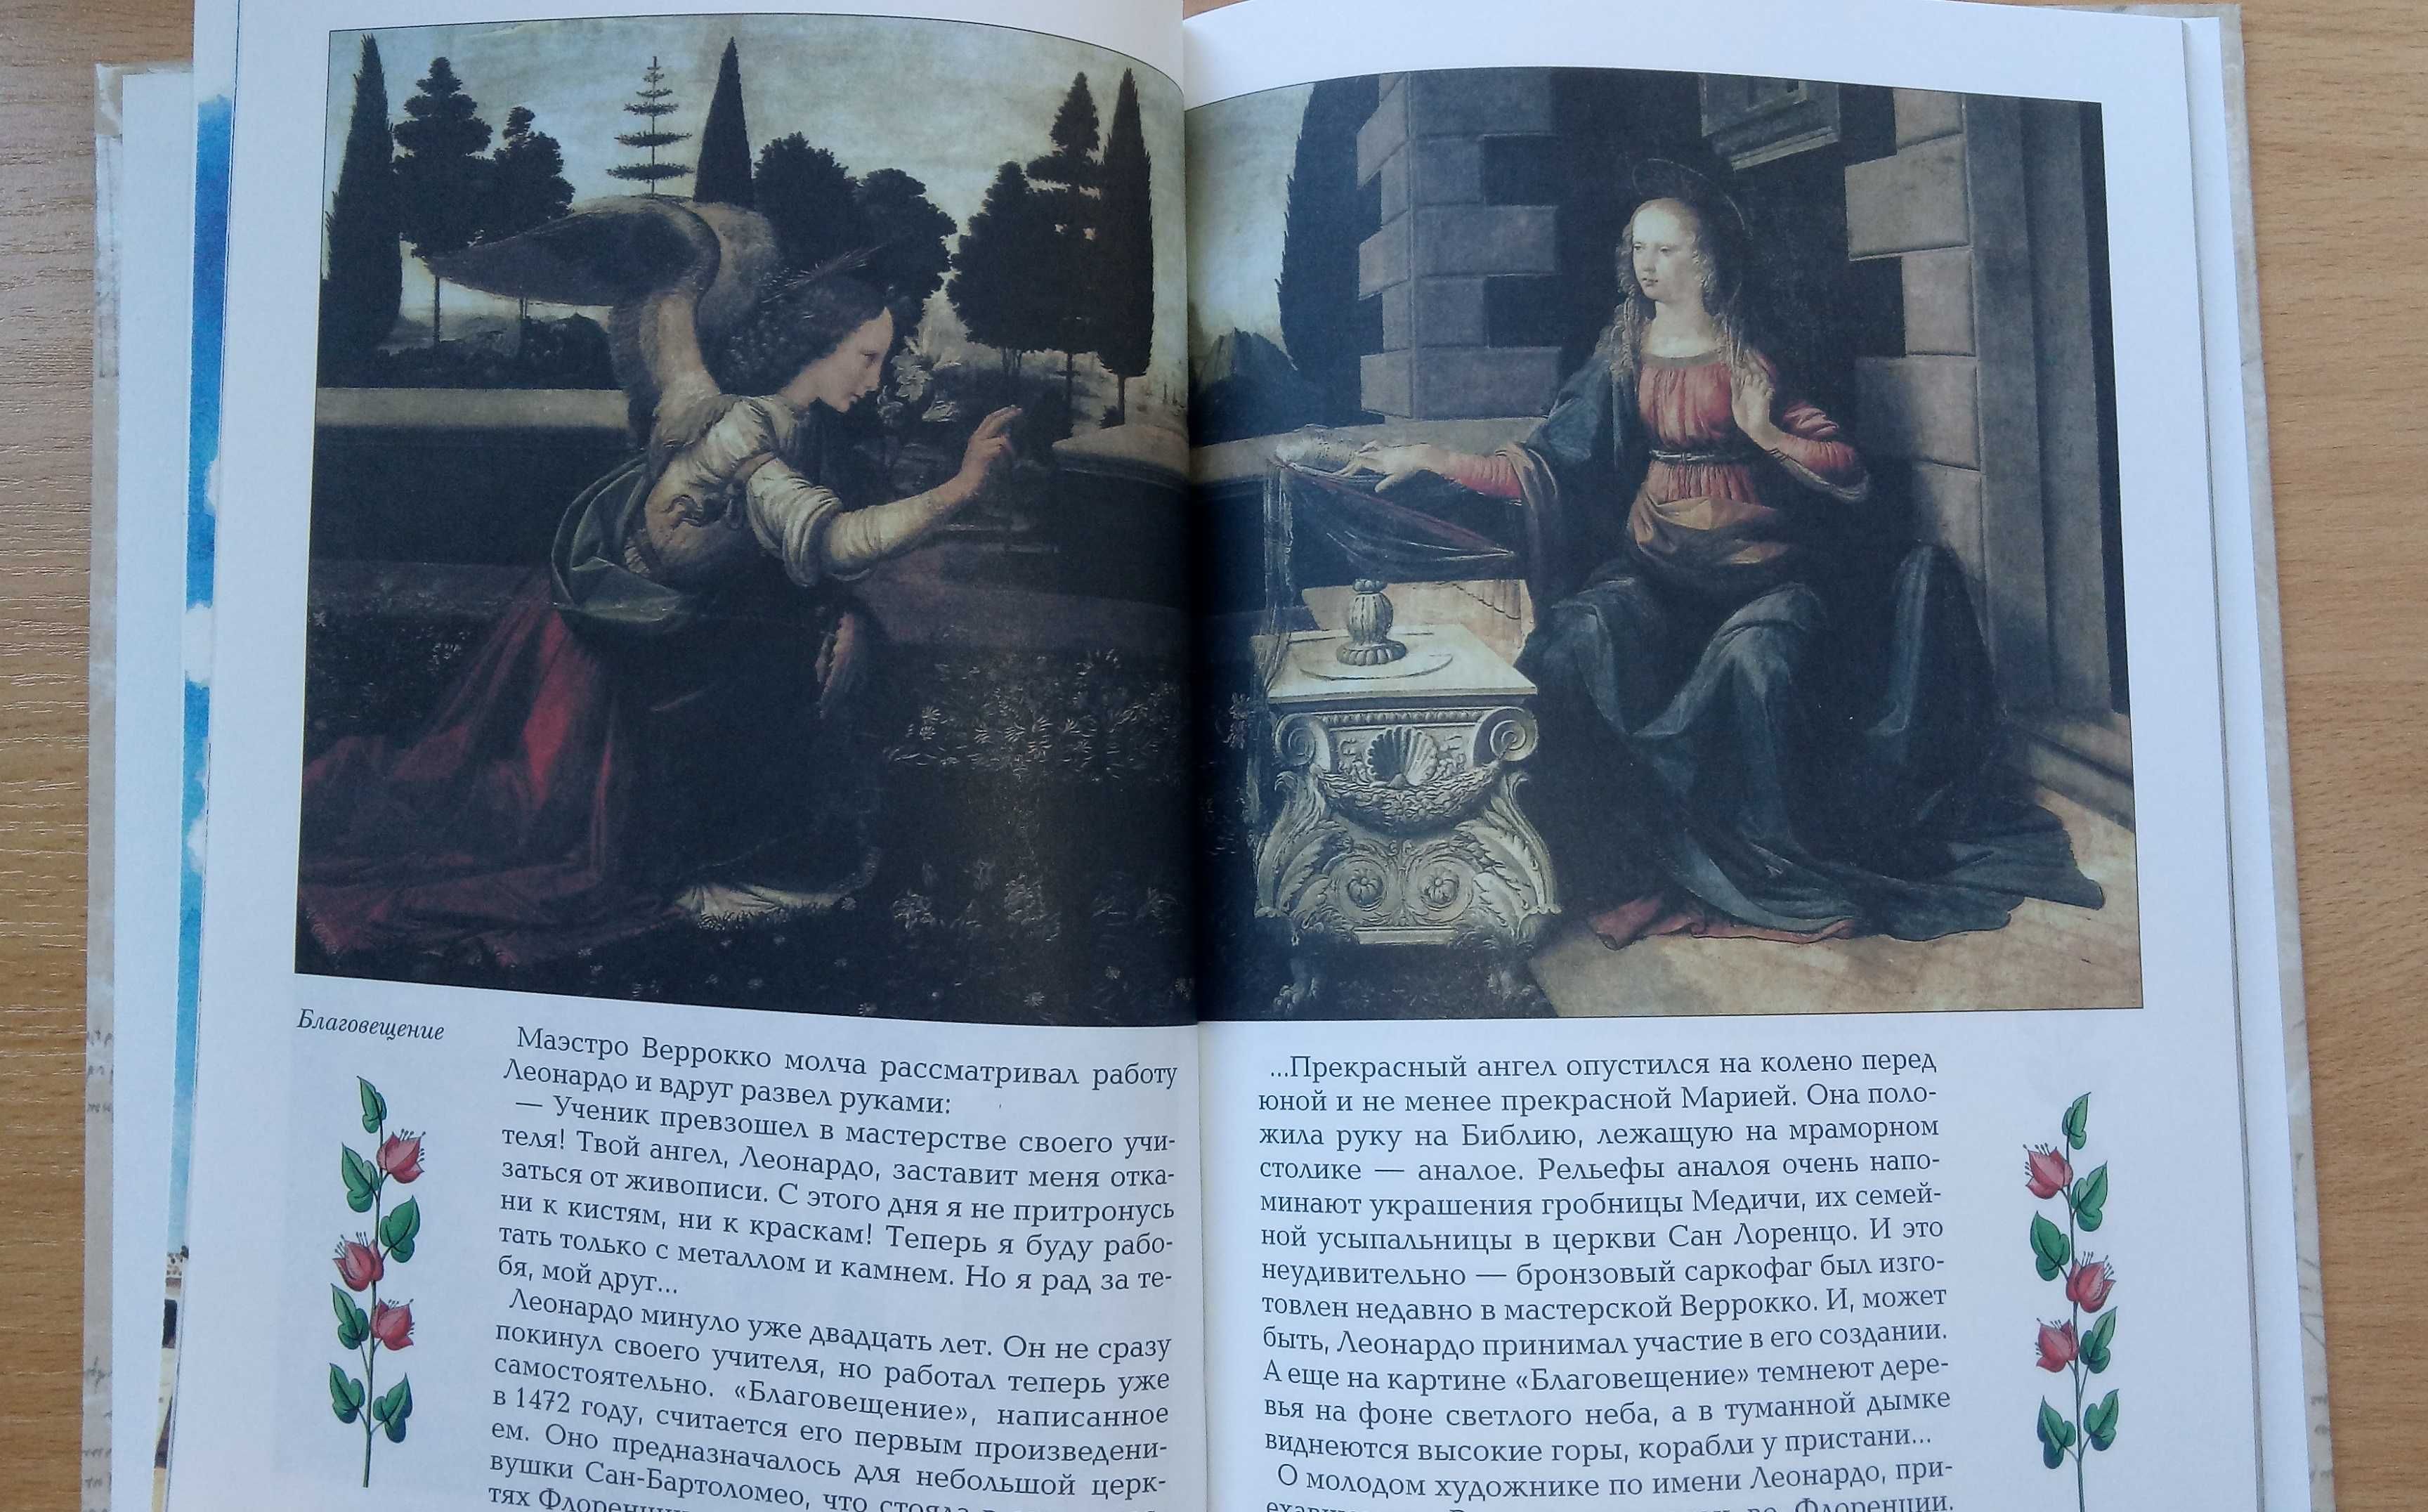 Леонардо да Винчи Биография, иллюстрации (Художник, Эпоха Возрождения)